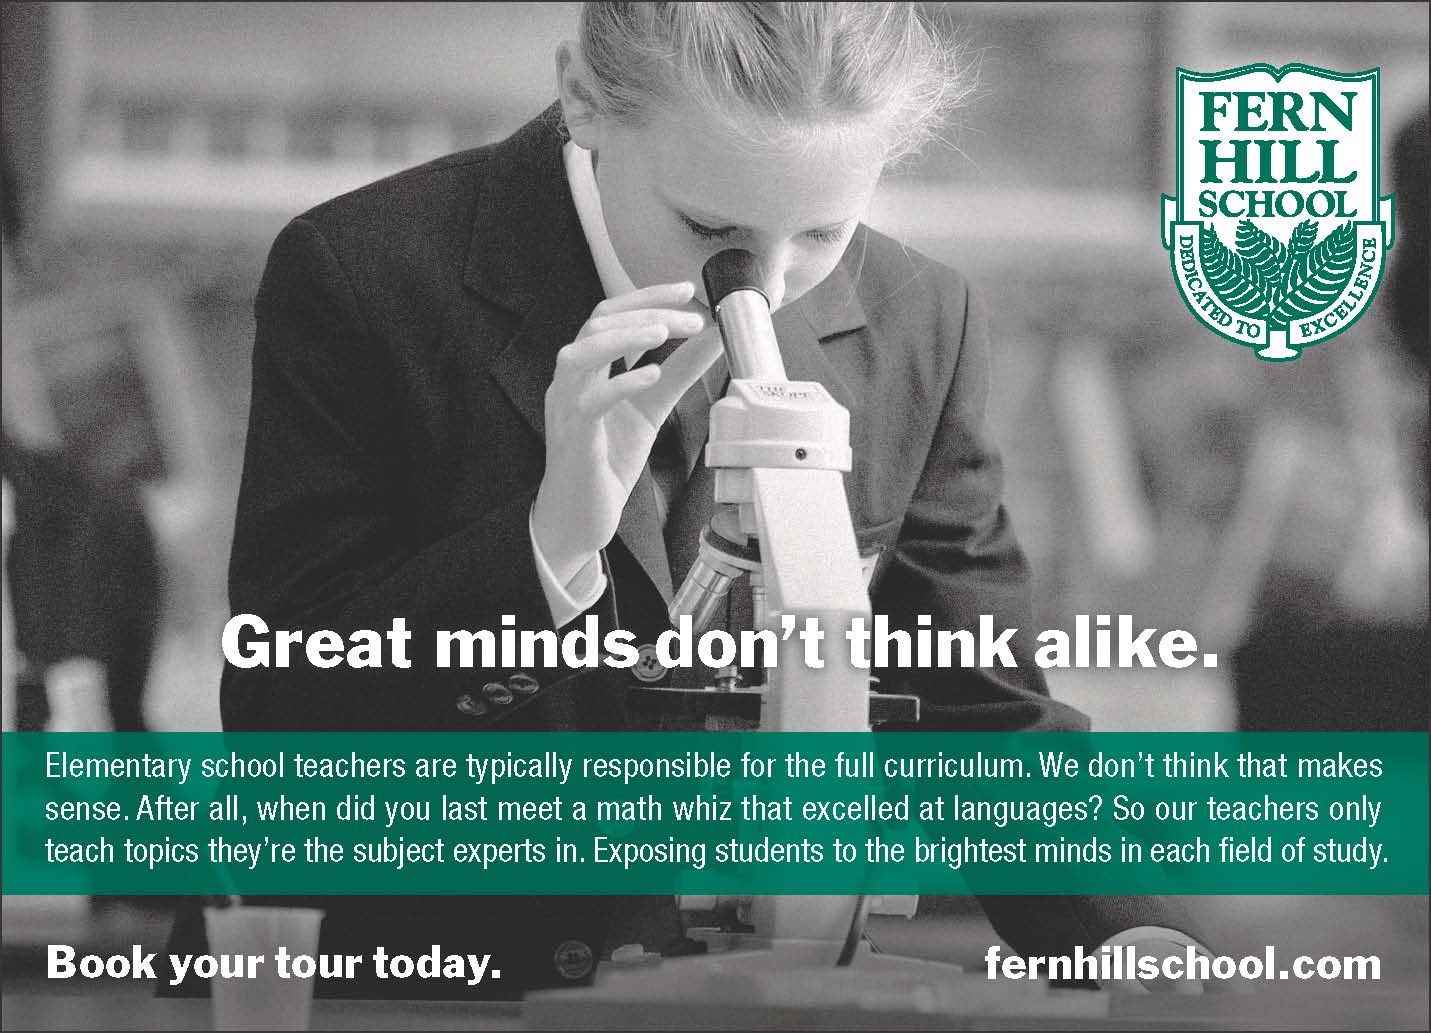 Fern Hill _Great minds_ ad.jpg